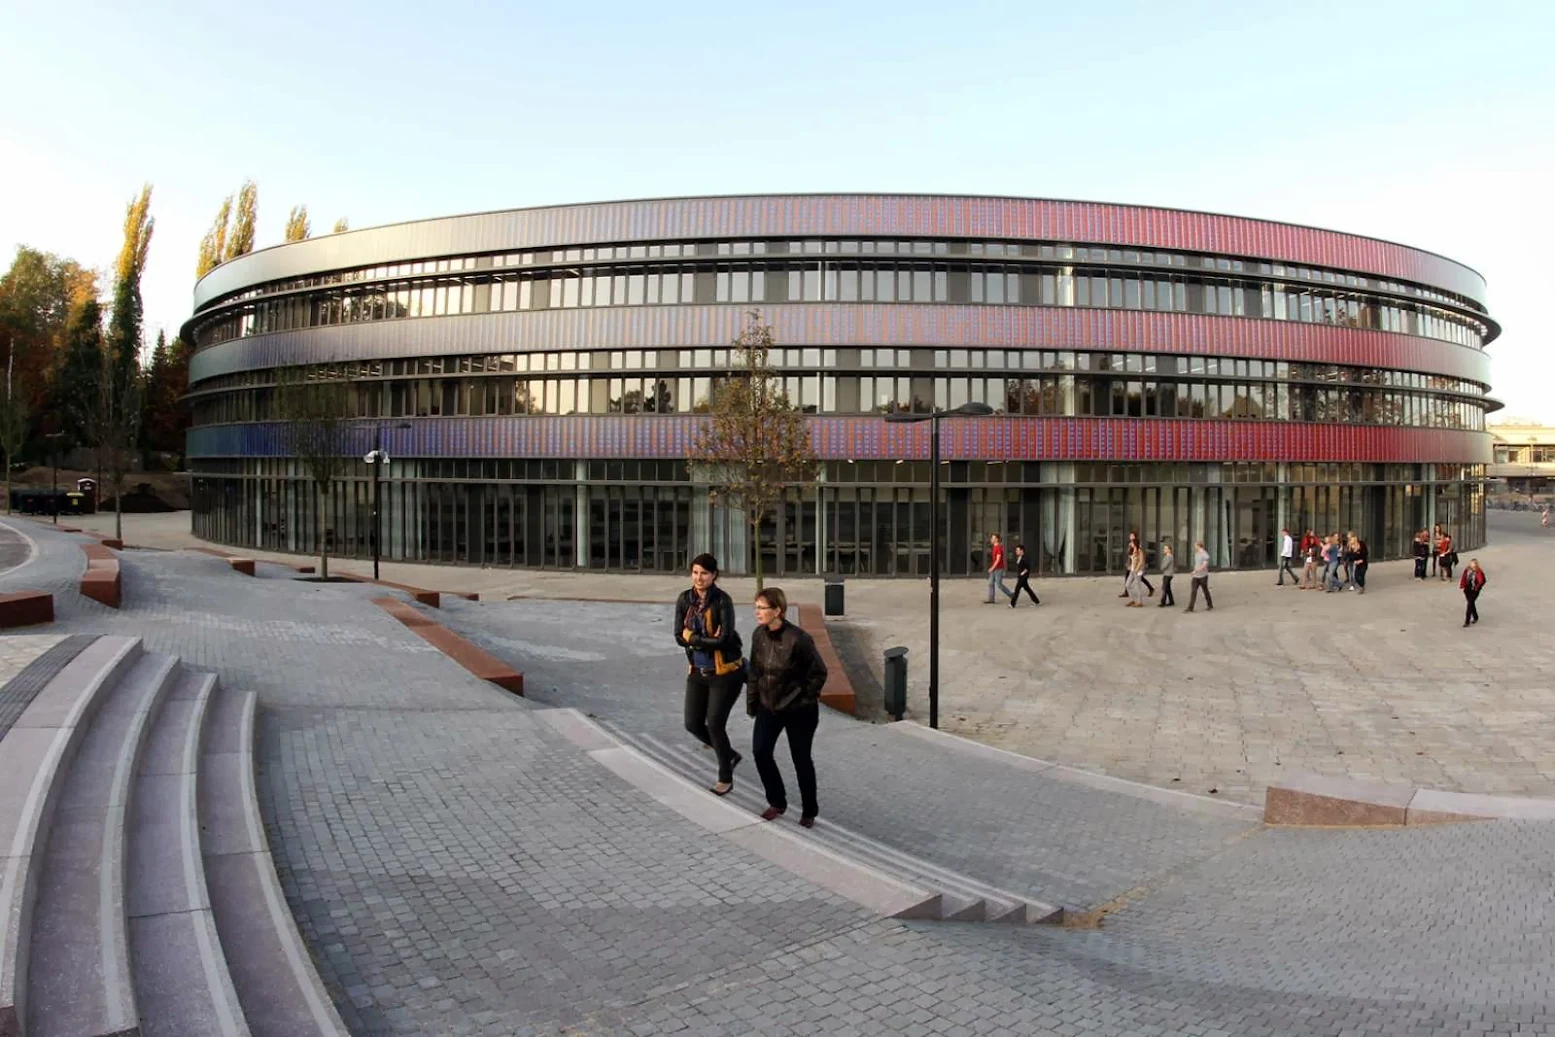 Neues Gymnasium by Hascher Jehle Architektur